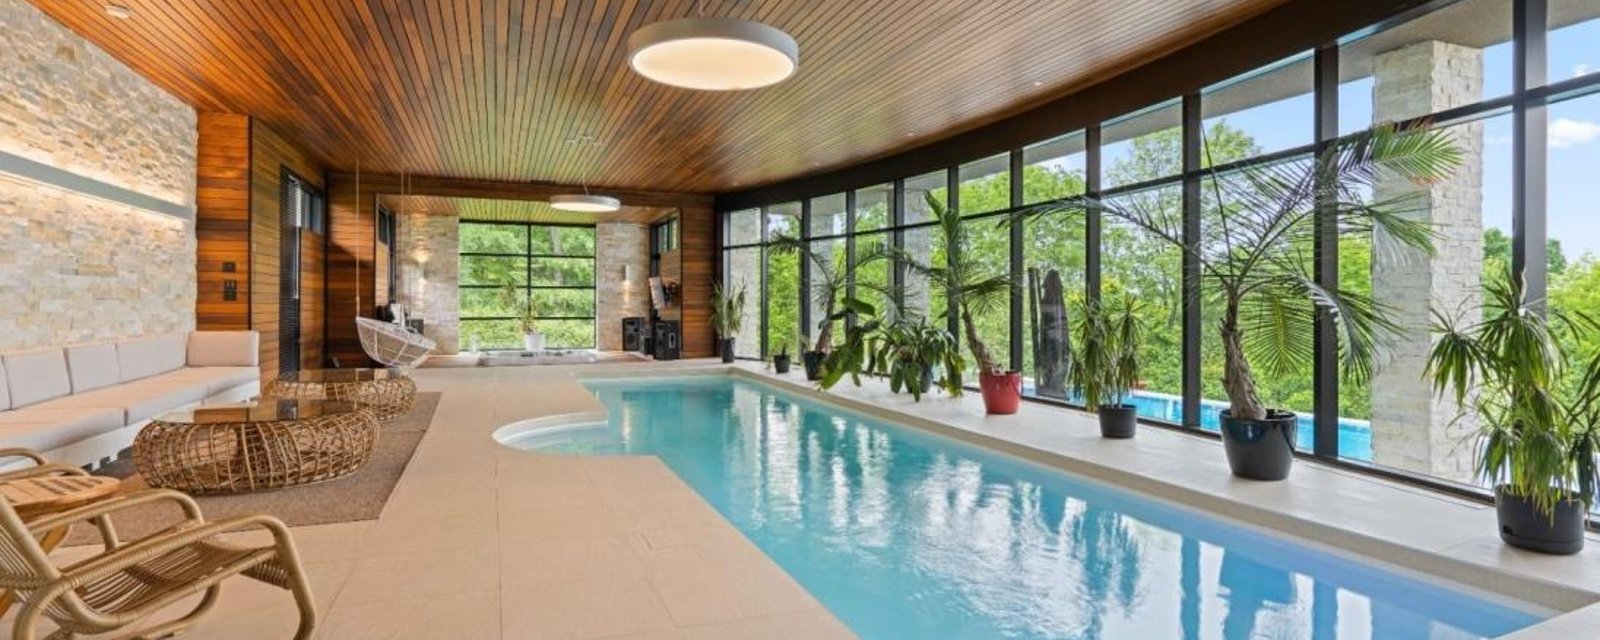 Il n'y a pas que la piscine intérieure qui impressionne dans cette résidence